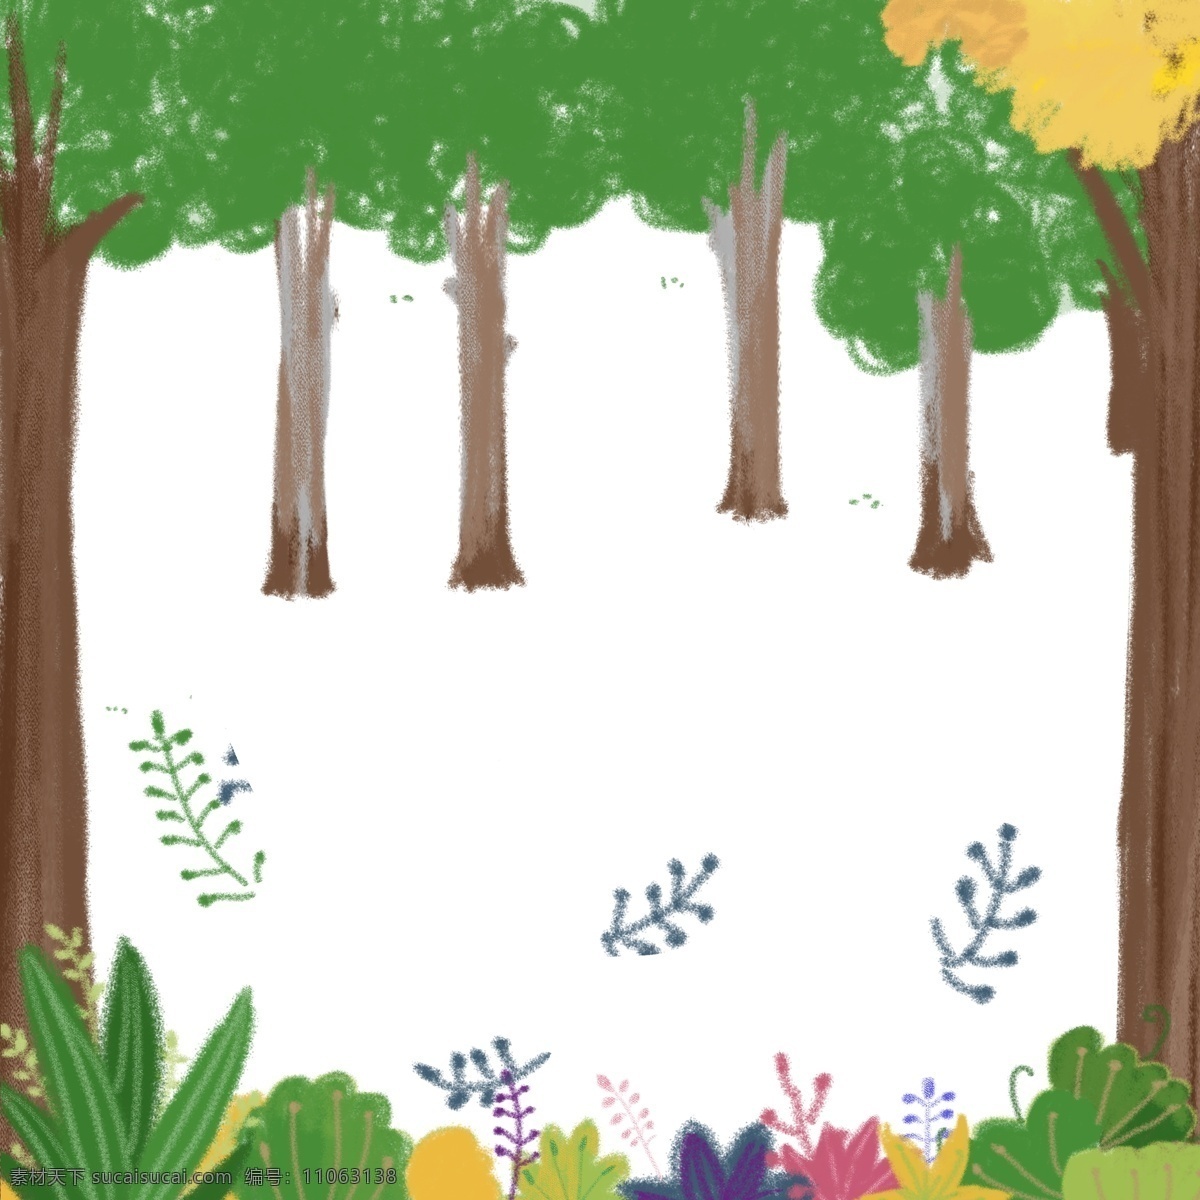 大树 森林 绿色 清新 可爱 手绘 小树叶 画册 卡通 纹理 淘宝 天猫 京东 促销 小草